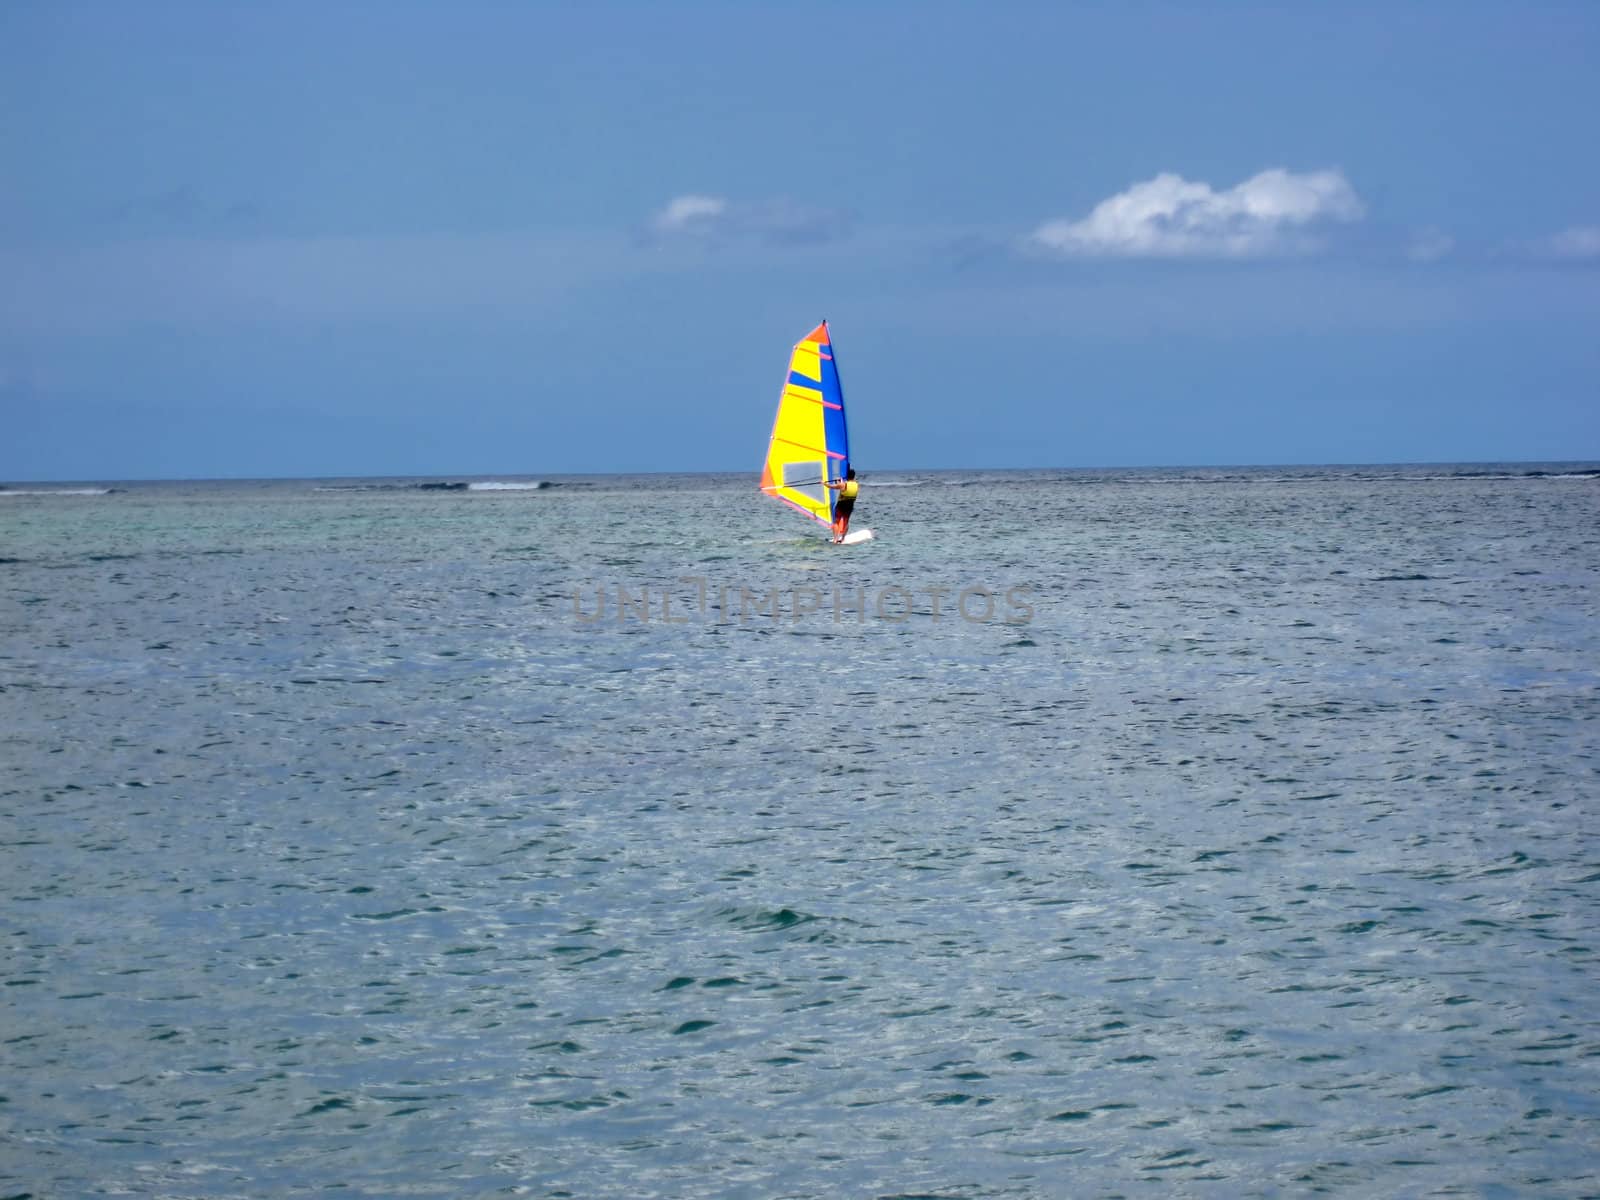 Windsurfing in calm ocean of Mauritius